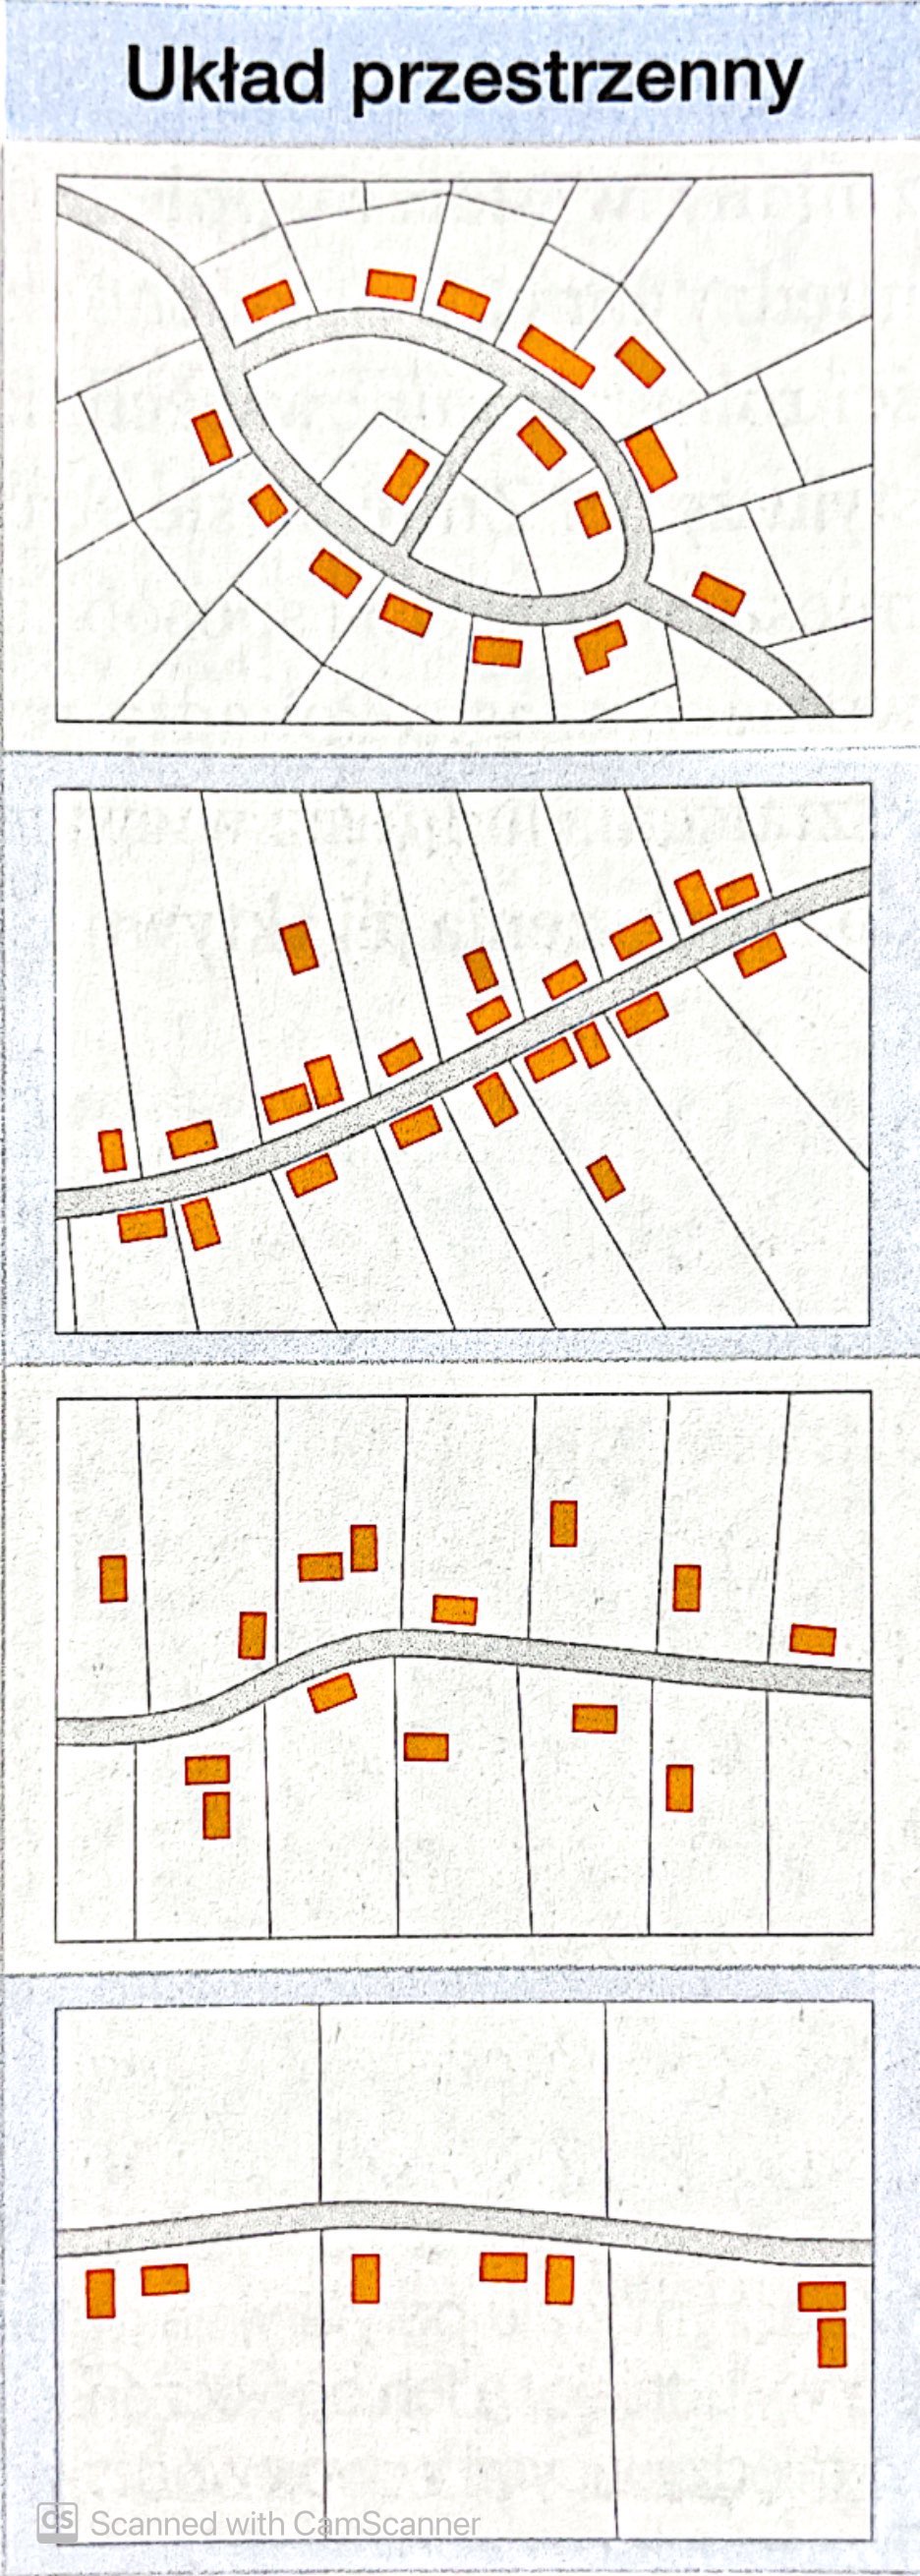 <ul><li><p>owalnica - placowa o owalnym kształcie wyznaczonym przez dwie ulice ze zwartą zabudową (ulice otaczają centralnie położony plac i schodzą się ze sobą na krańcach)</p></li><li><p>ulicówka - odznacza się zwartą zabudową po obu stronach jednej głównej drogi i regularnym układem wąskich pól uprawnych</p></li><li><p>łańcuchówka - charakteryzuje się rozproszoną i nieregularną zabudową skupioną wzdłuż głównej drogi przecinającej należące do wsi i przedzielone miedziami grunty (łany)</p></li><li><p>rzędówka - luźna zabudowa skupiona najwcześniej po jednej stronie drogi, która oddziela gospodarstwa od należących do nich szerokich psów pól uprawnych</p></li></ul>